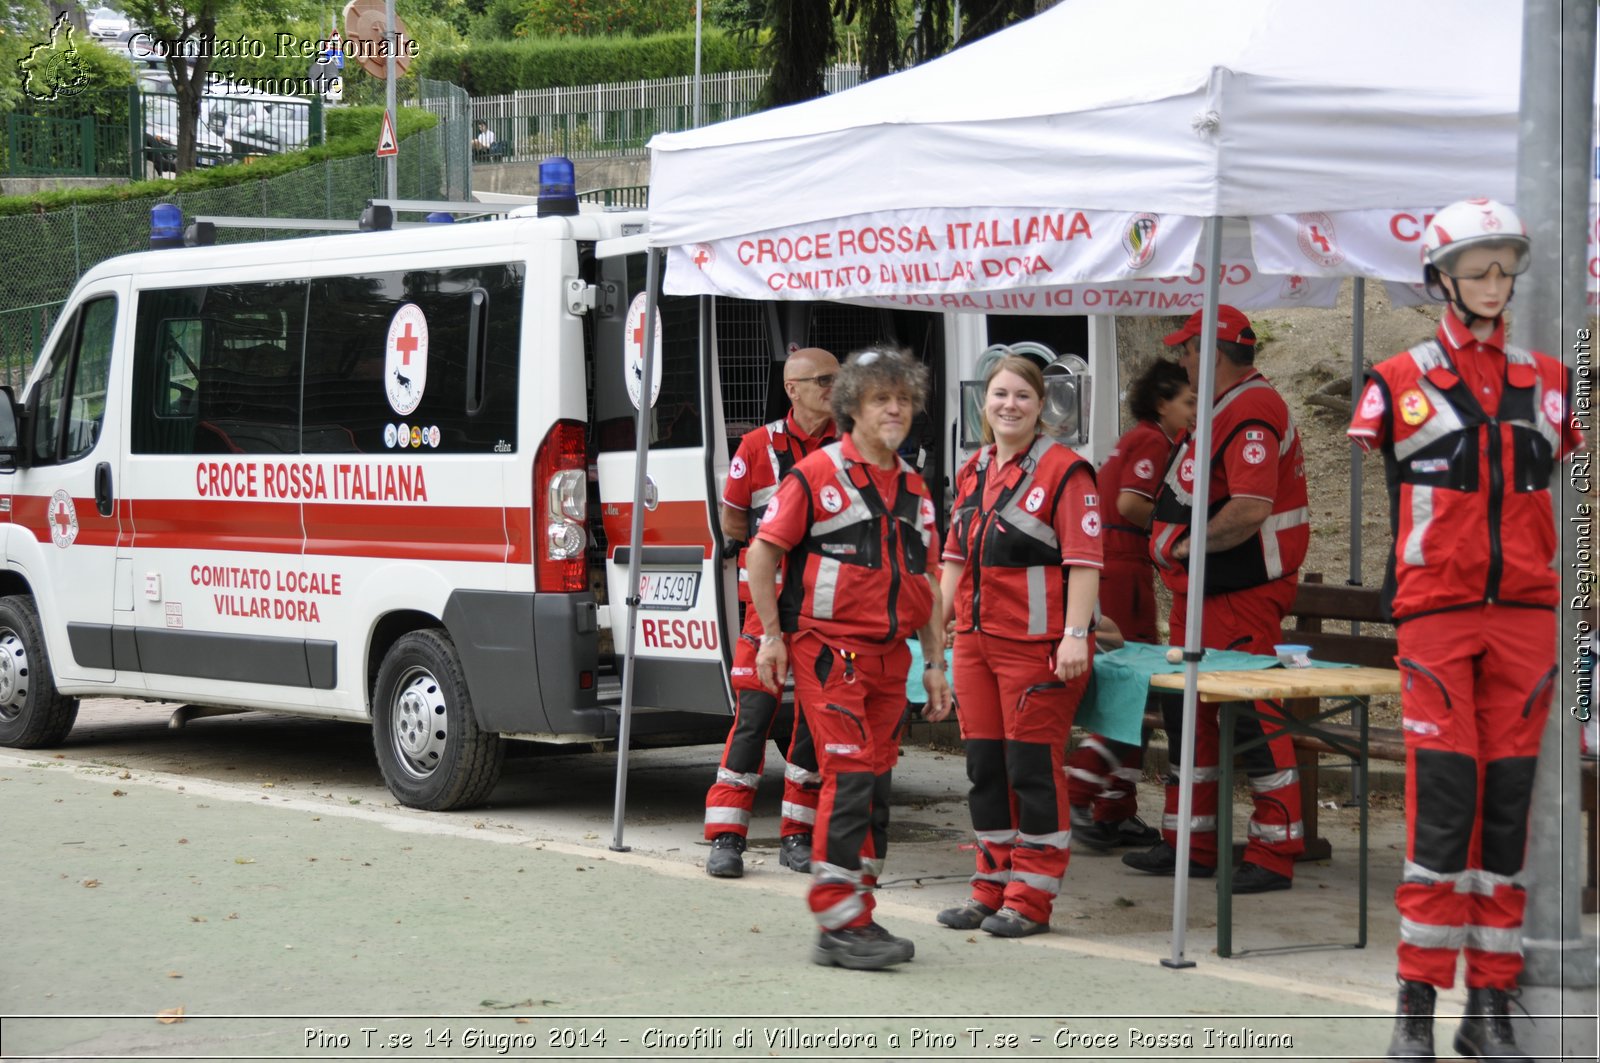 Pino T.se 14 Giugno 2014 - Cinofili di Villardora a Pino T.se - Croce Rossa Italiana- Comitato Regionale del Piemonte